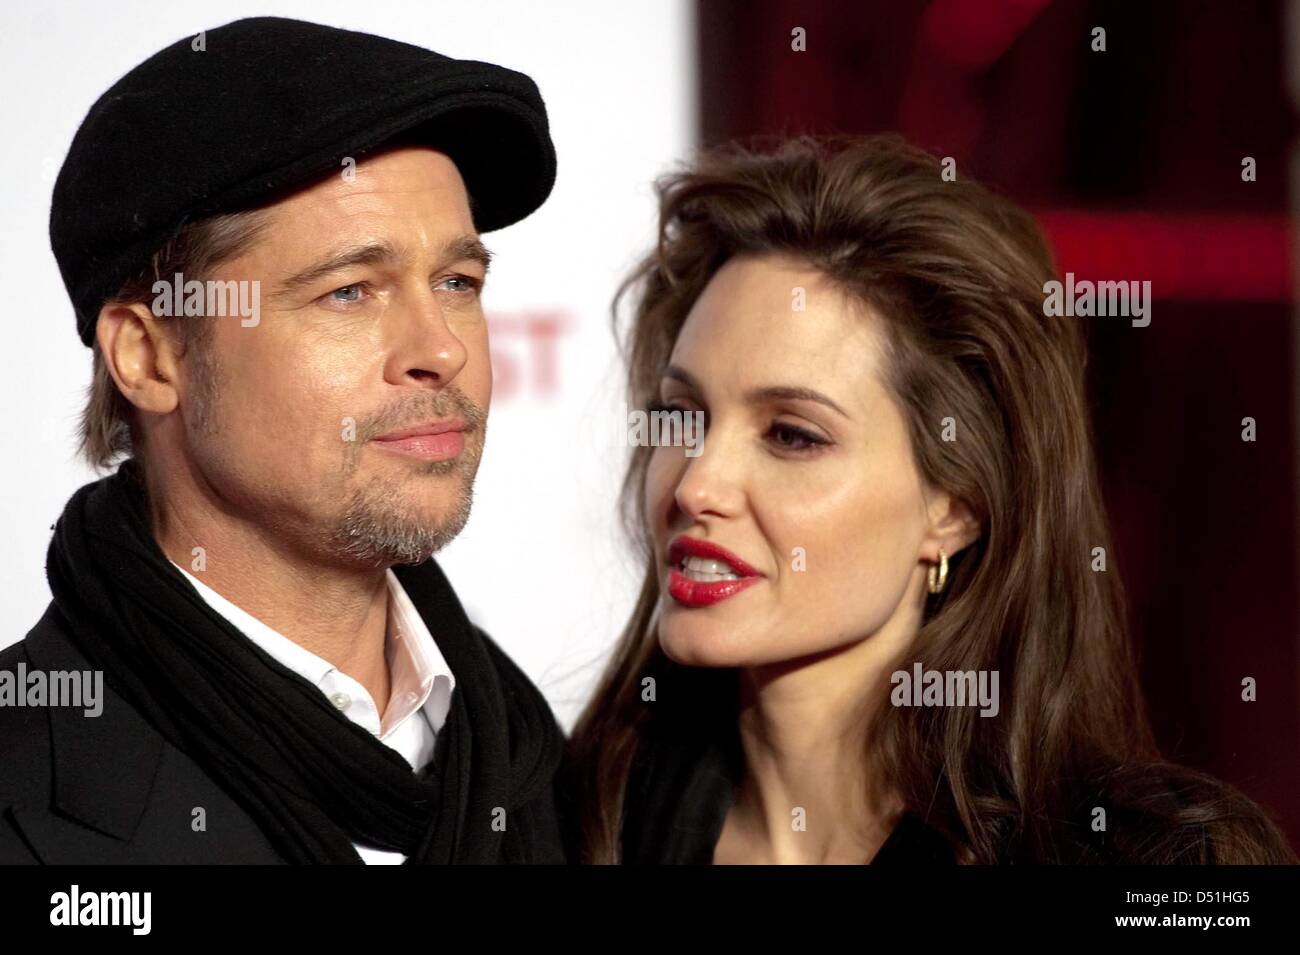 Angelina Jolie und Brad Pitt an der Premiere des Films "The Tourist" in Rom, Italien, 15. Dezember 2010 teilnehmen. Foto: Cosima Scavolini Stockfoto